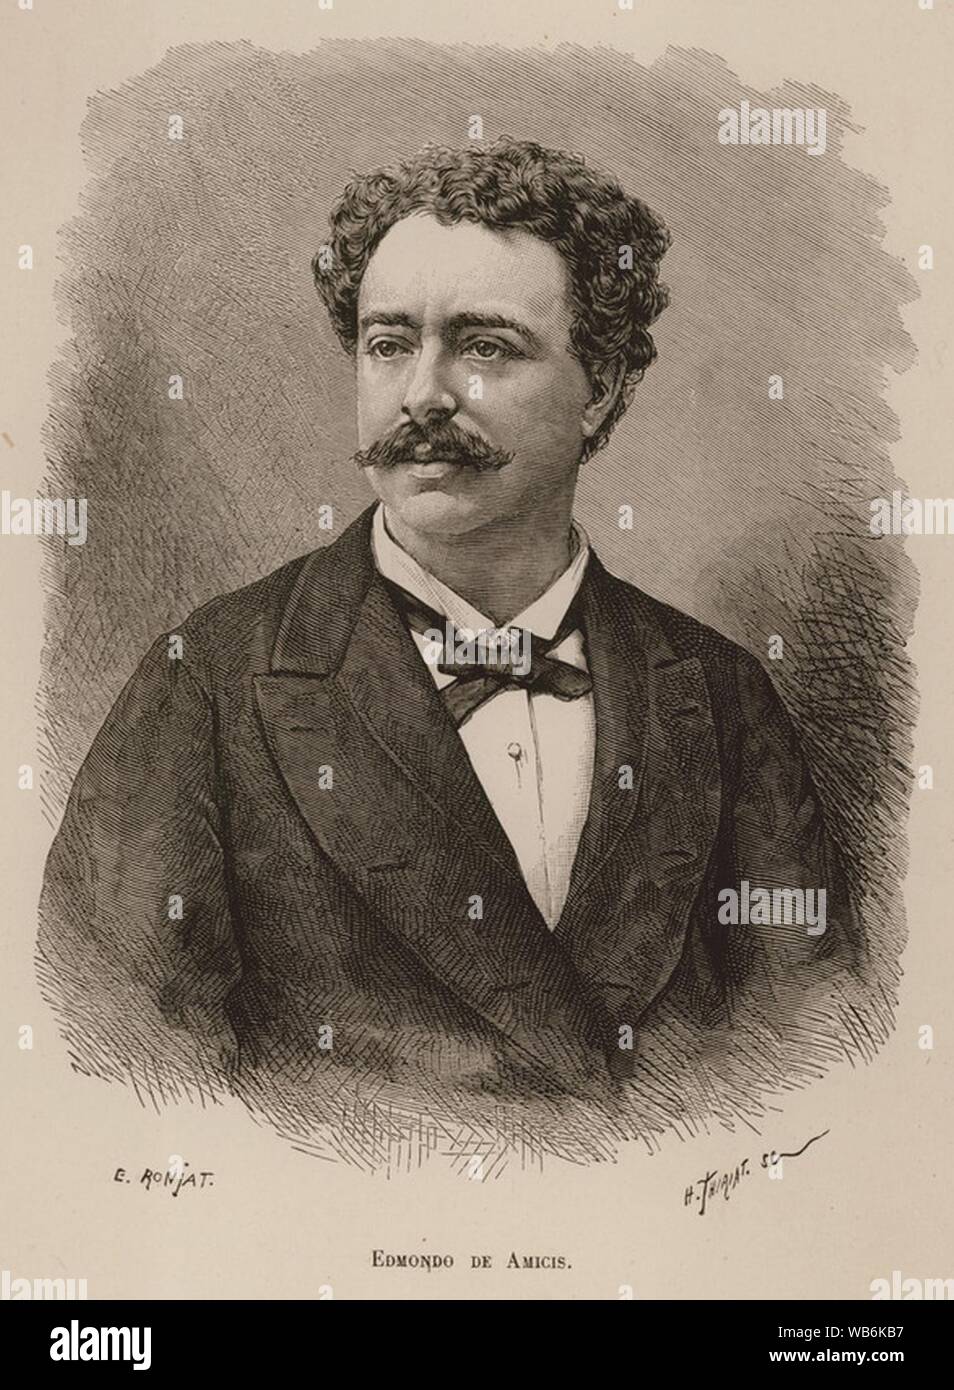 Edmondo de Amicis - De Amicis Edmondo - 1883. Stock Photo